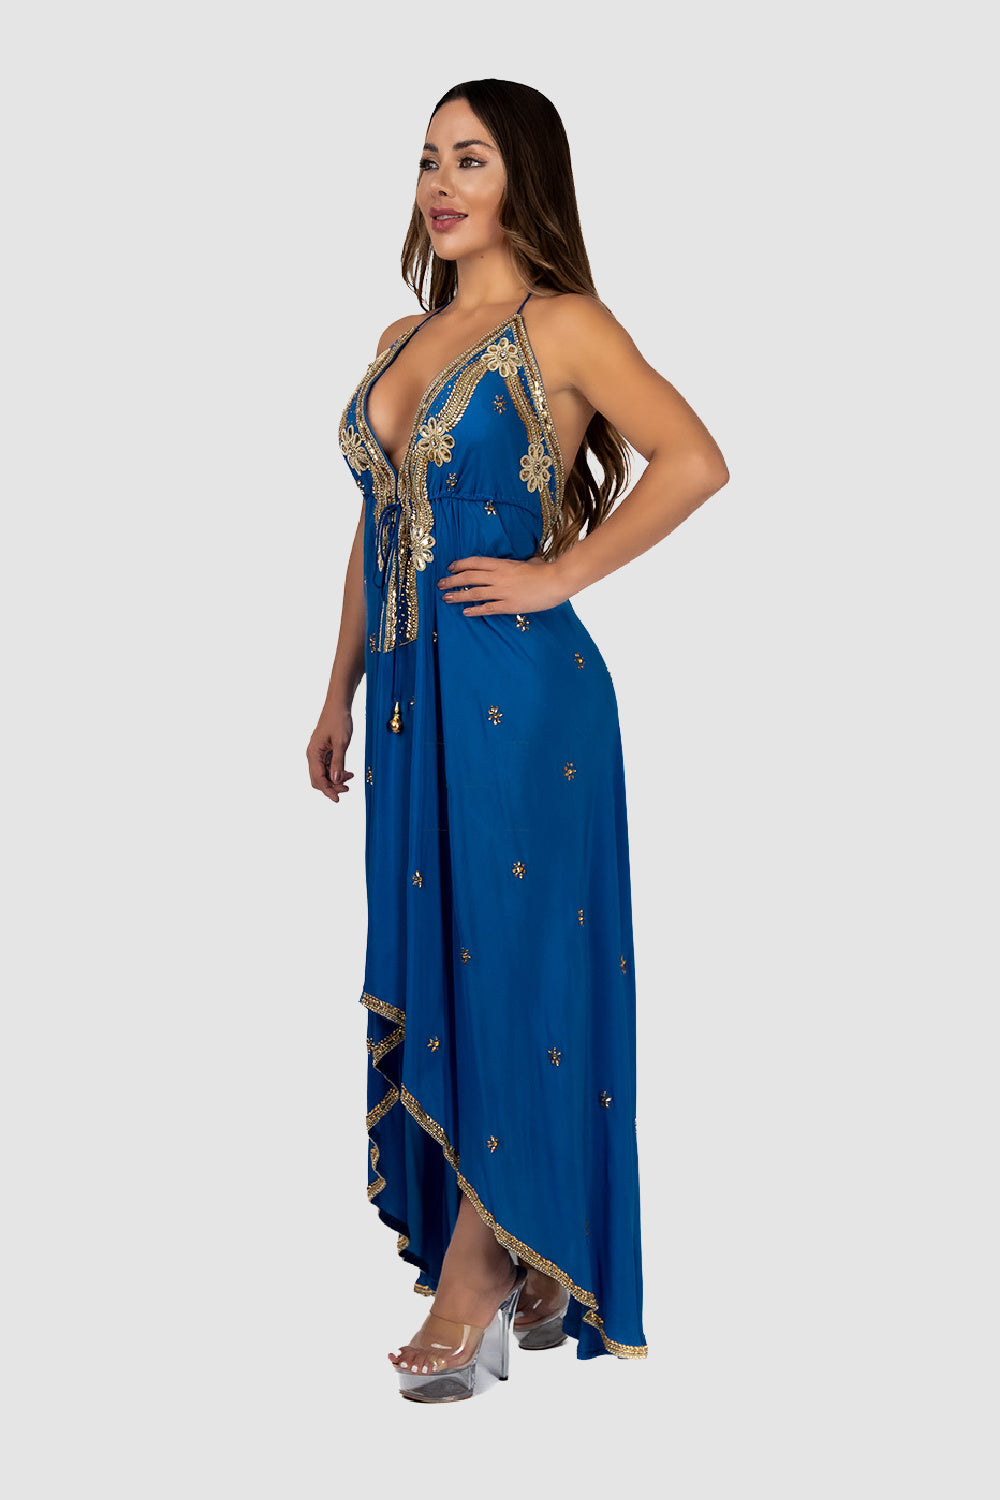 KAREENA'S EMBELLISHED COBALT BLUE DRESS